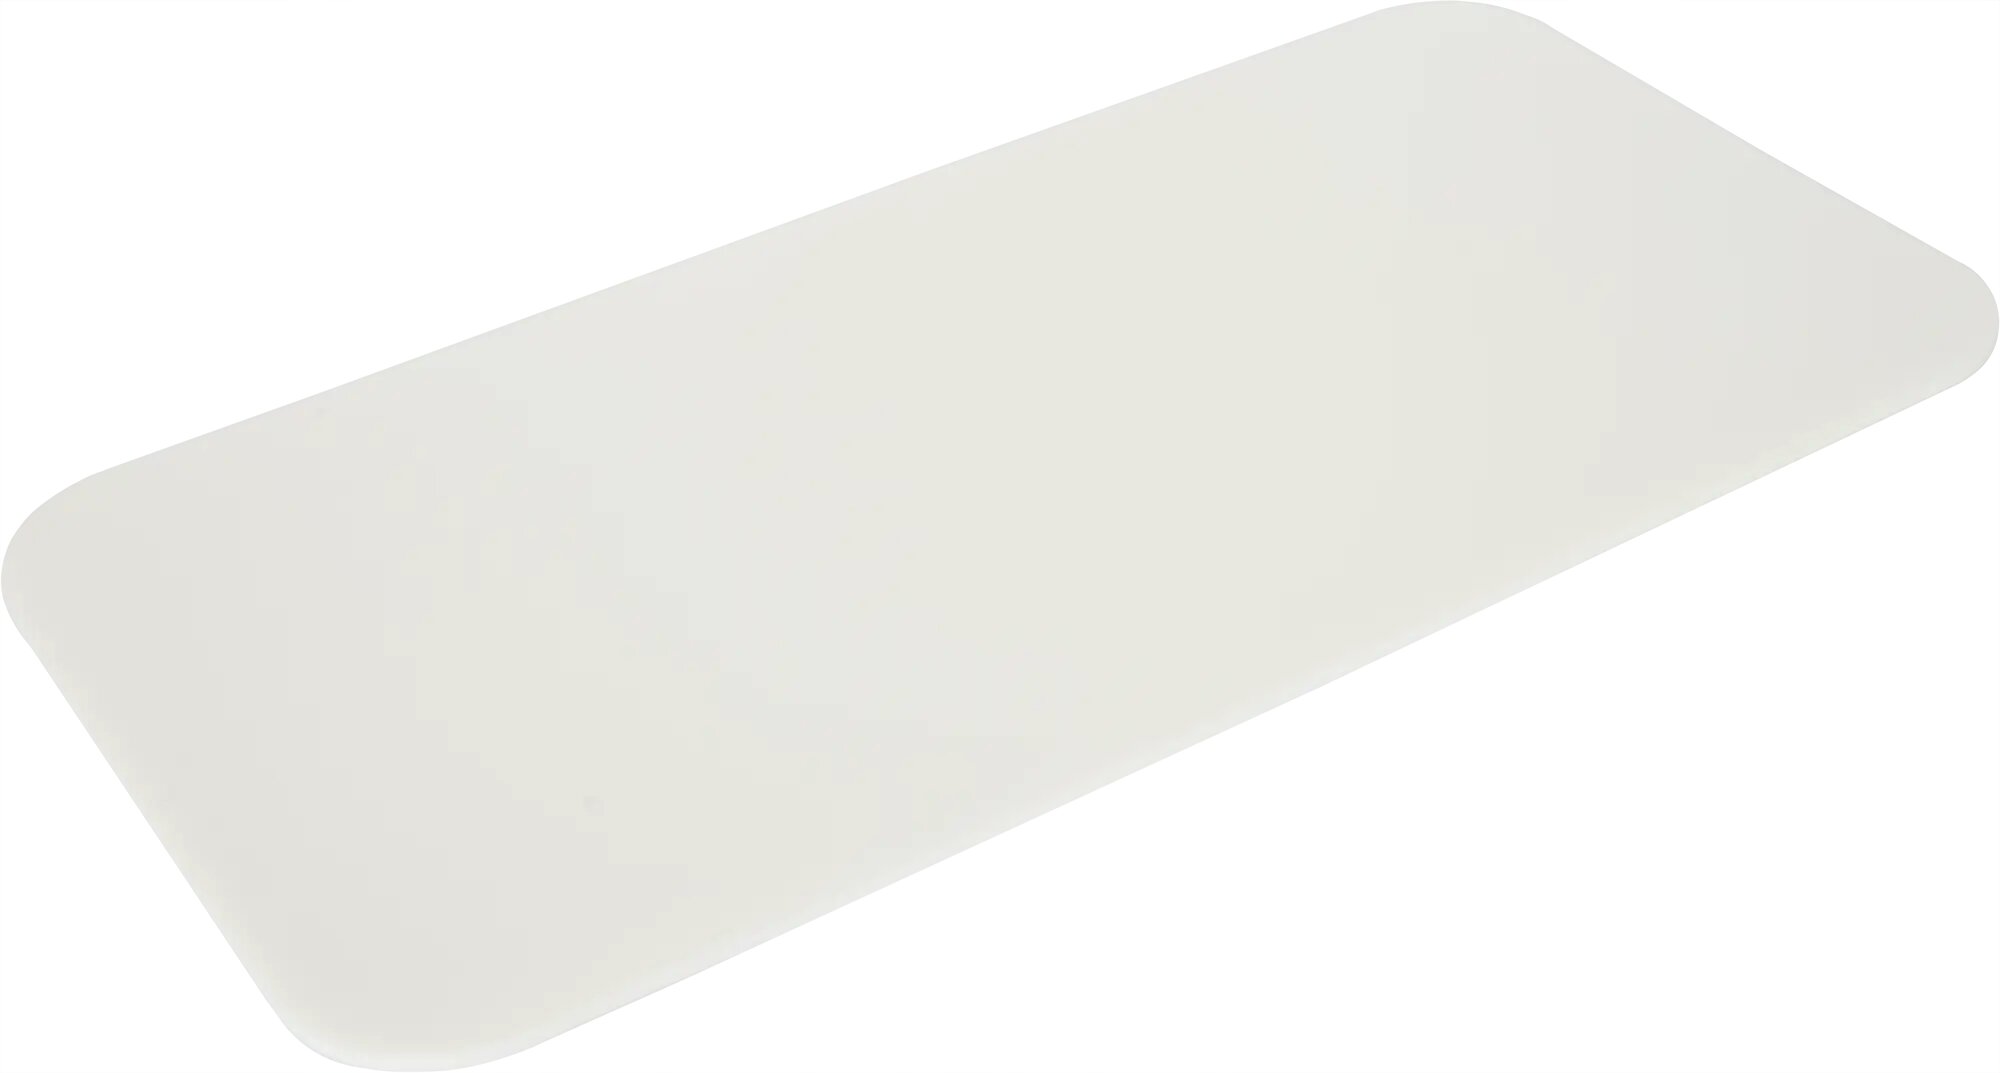 Прокладка универсальная под унитаз компакт 49x24 см полистирол цвет белый